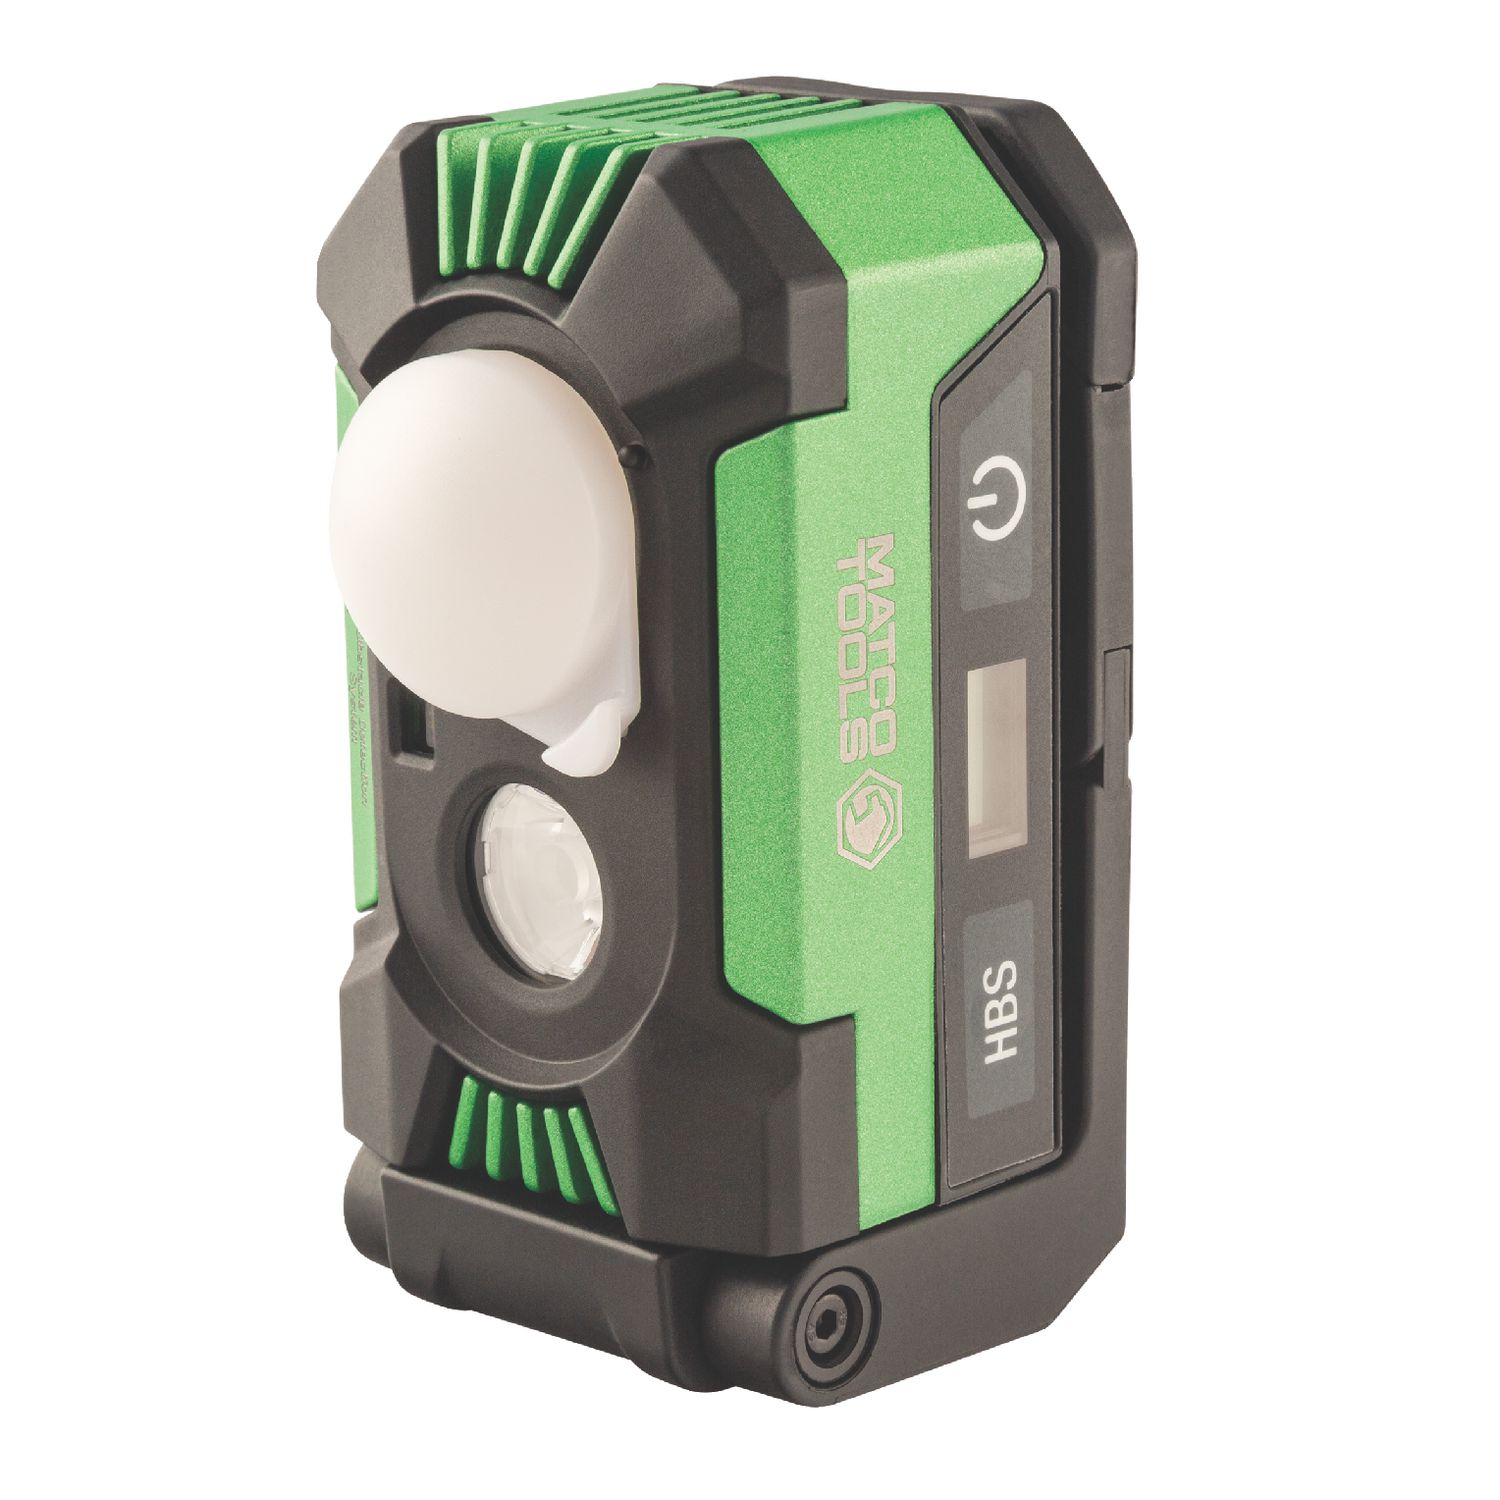 JobSmart 1,500 Lumen Emergency Spotlight with Green Laser at